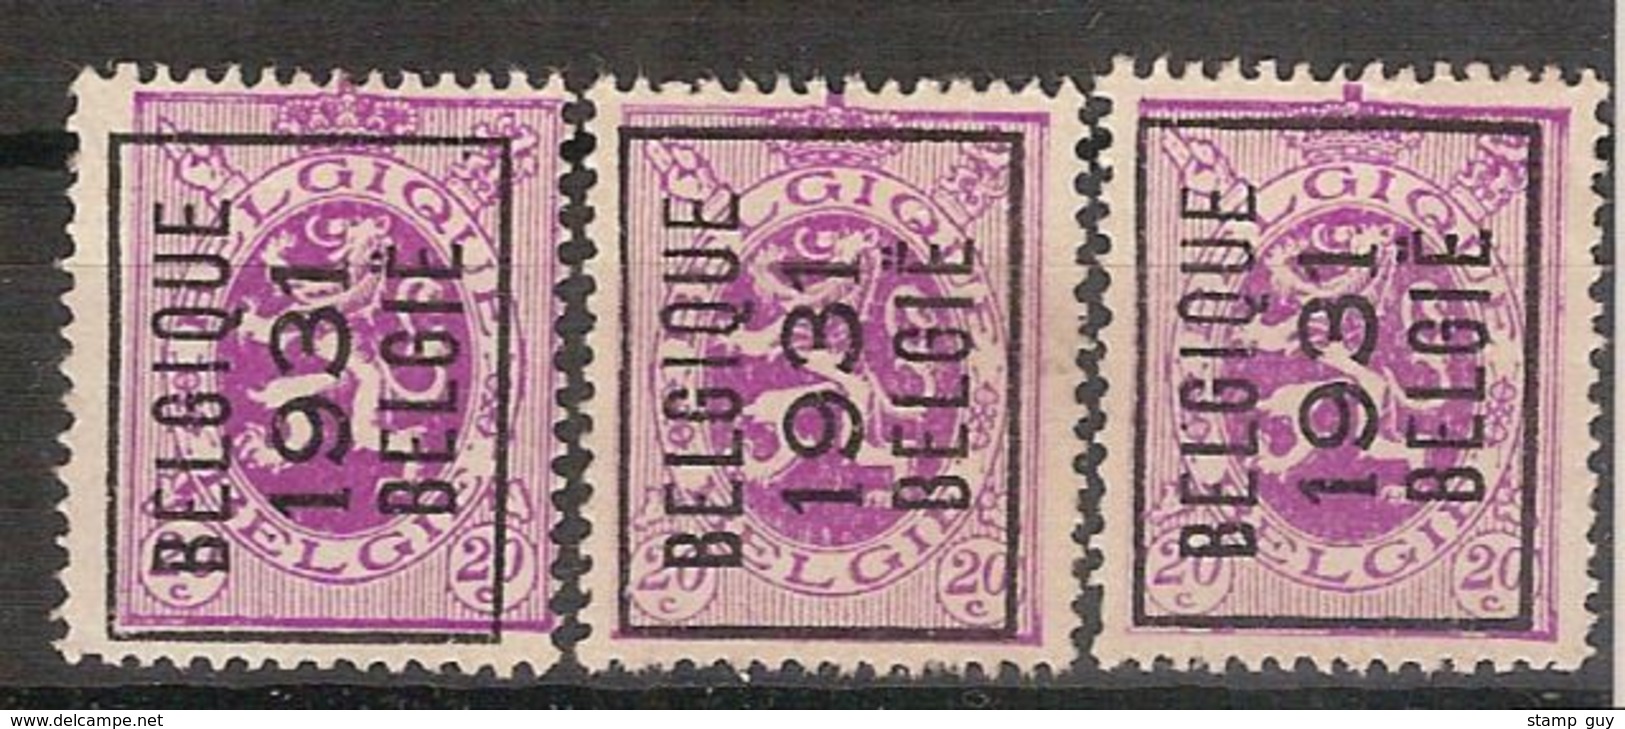 BELGIË - PREO - 1931 - Nr.  249 A (3x) - BELGIQUE 1931 BELGIË - (*) ! Inzet 5 &euro; ! - Typo Precancels 1929-37 (Heraldic Lion)